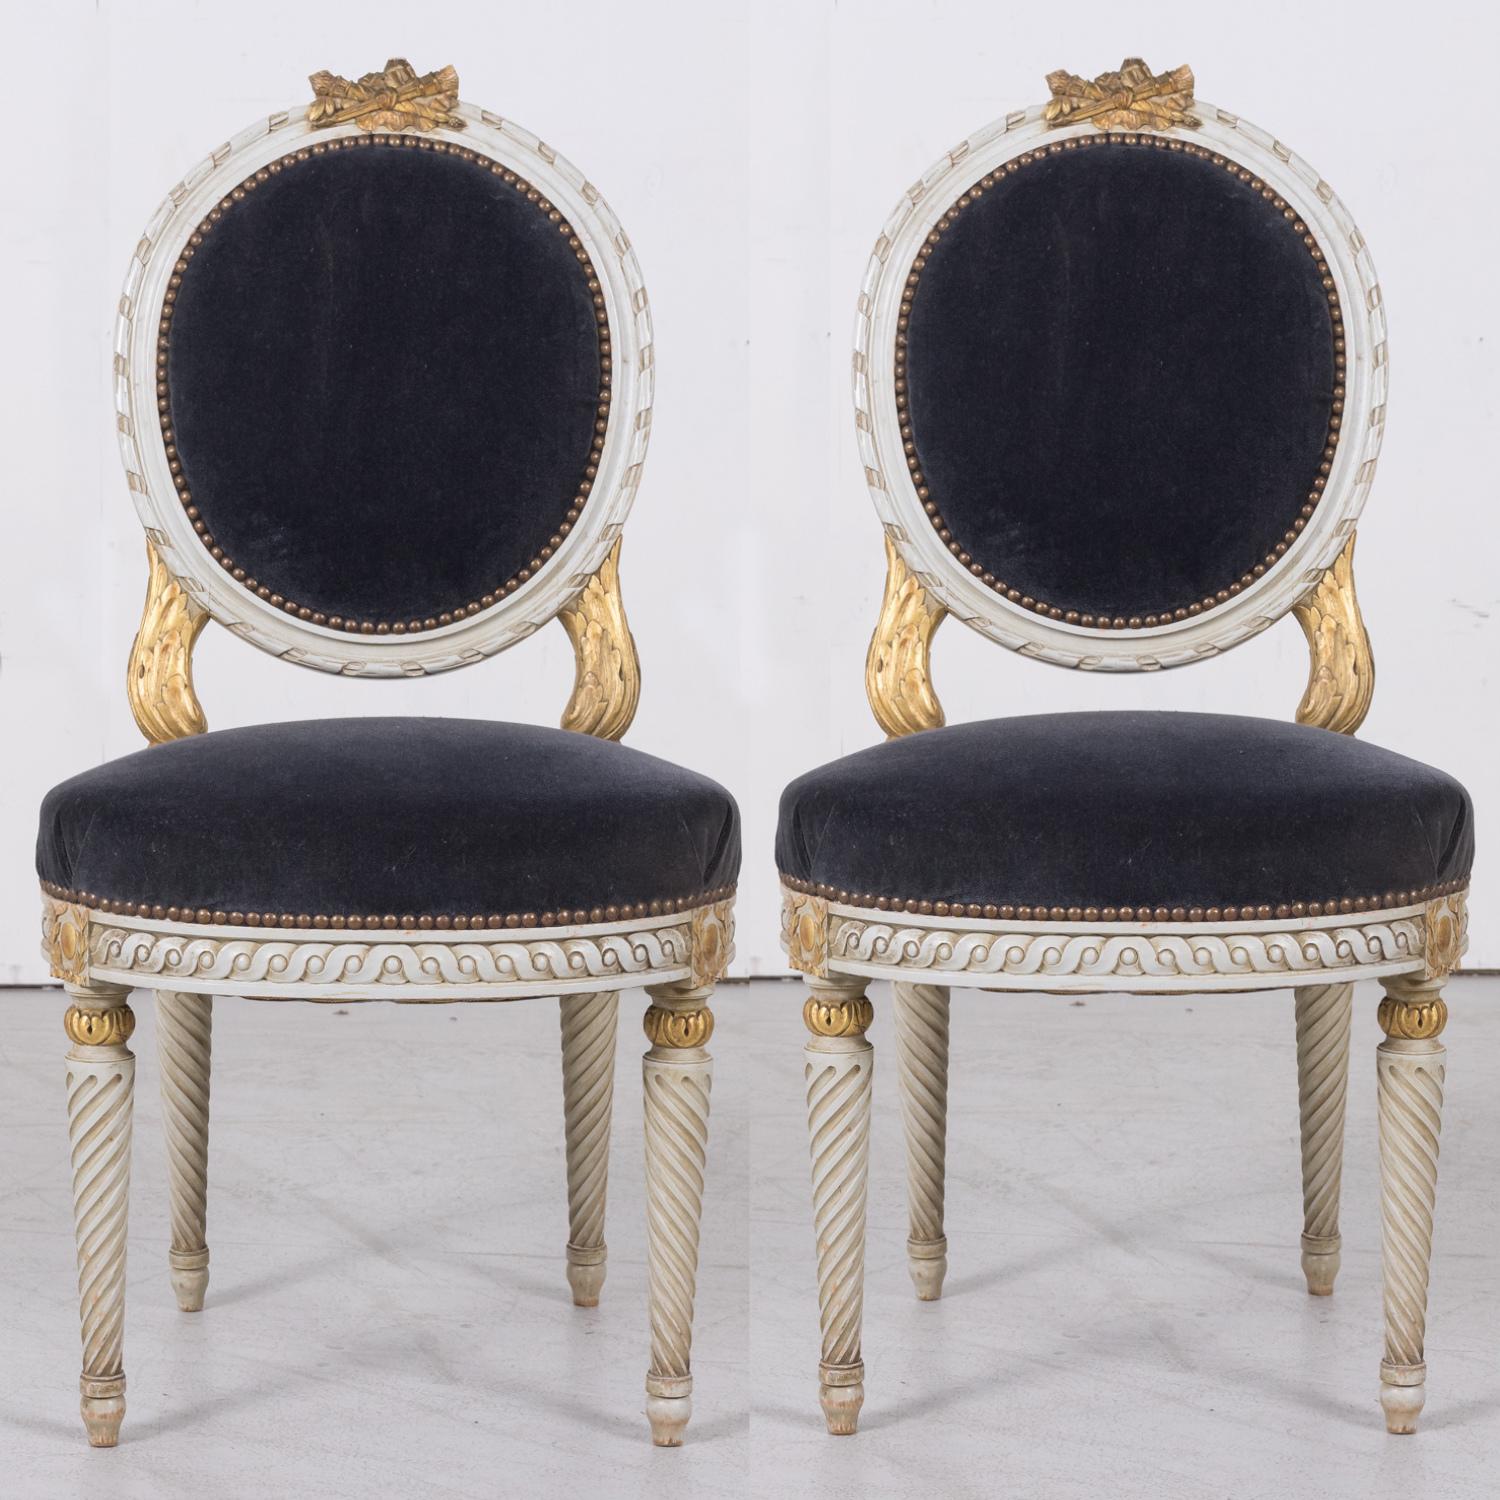 Exceptionnelle paire de chaises d'appoint de style Louis XVI français du 20e siècle, peintes et dorées parcellaires.  Fabriqué à la main à Paris, vers les années 1920. Témoignage d'une élégance intemporelle, ces chaises  se targuent d'un style